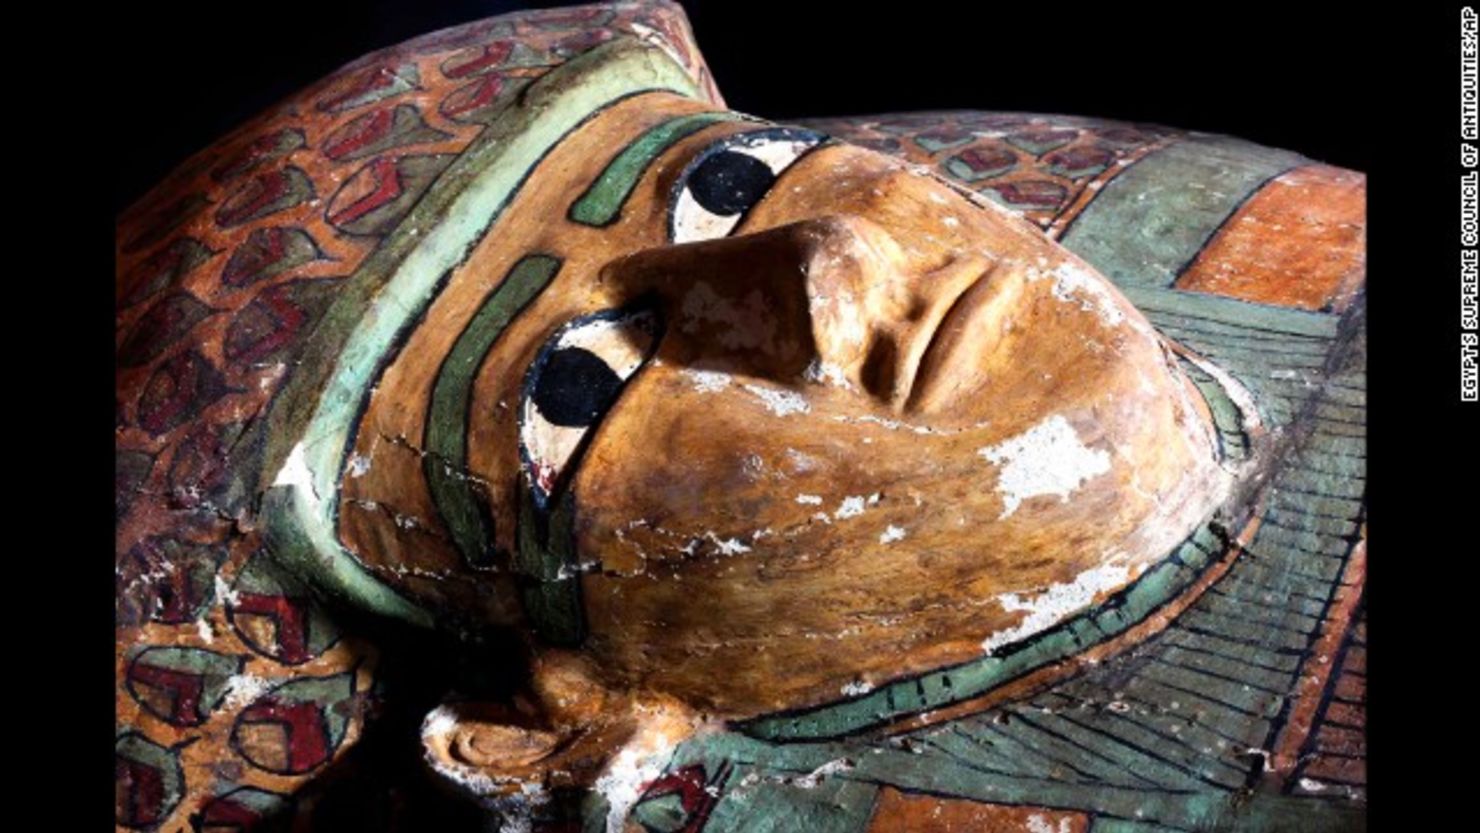 El sarcófago con la momia dentro data del año 1600 a.C. fue descubierto en Luxor, Egipto.